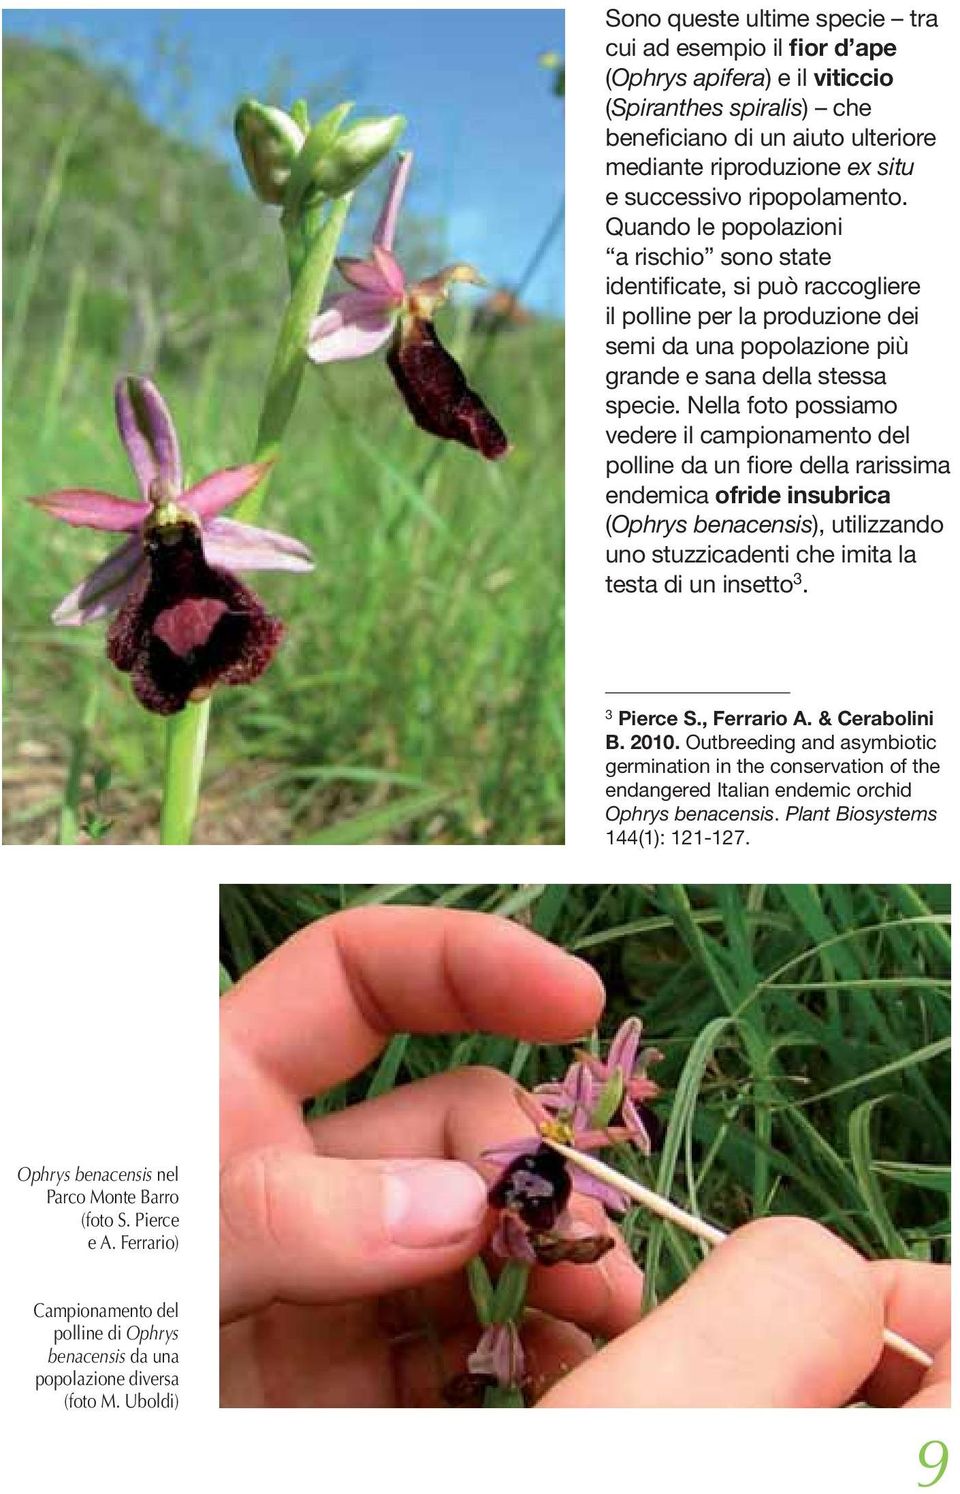 Nella foto possiamo vedere il campionamento del polline da un fiore della rarissima endemica ofride insubrica (Ophrys benacensis), utilizzando uno stuzzicadenti che imita la testa di un insetto 3.